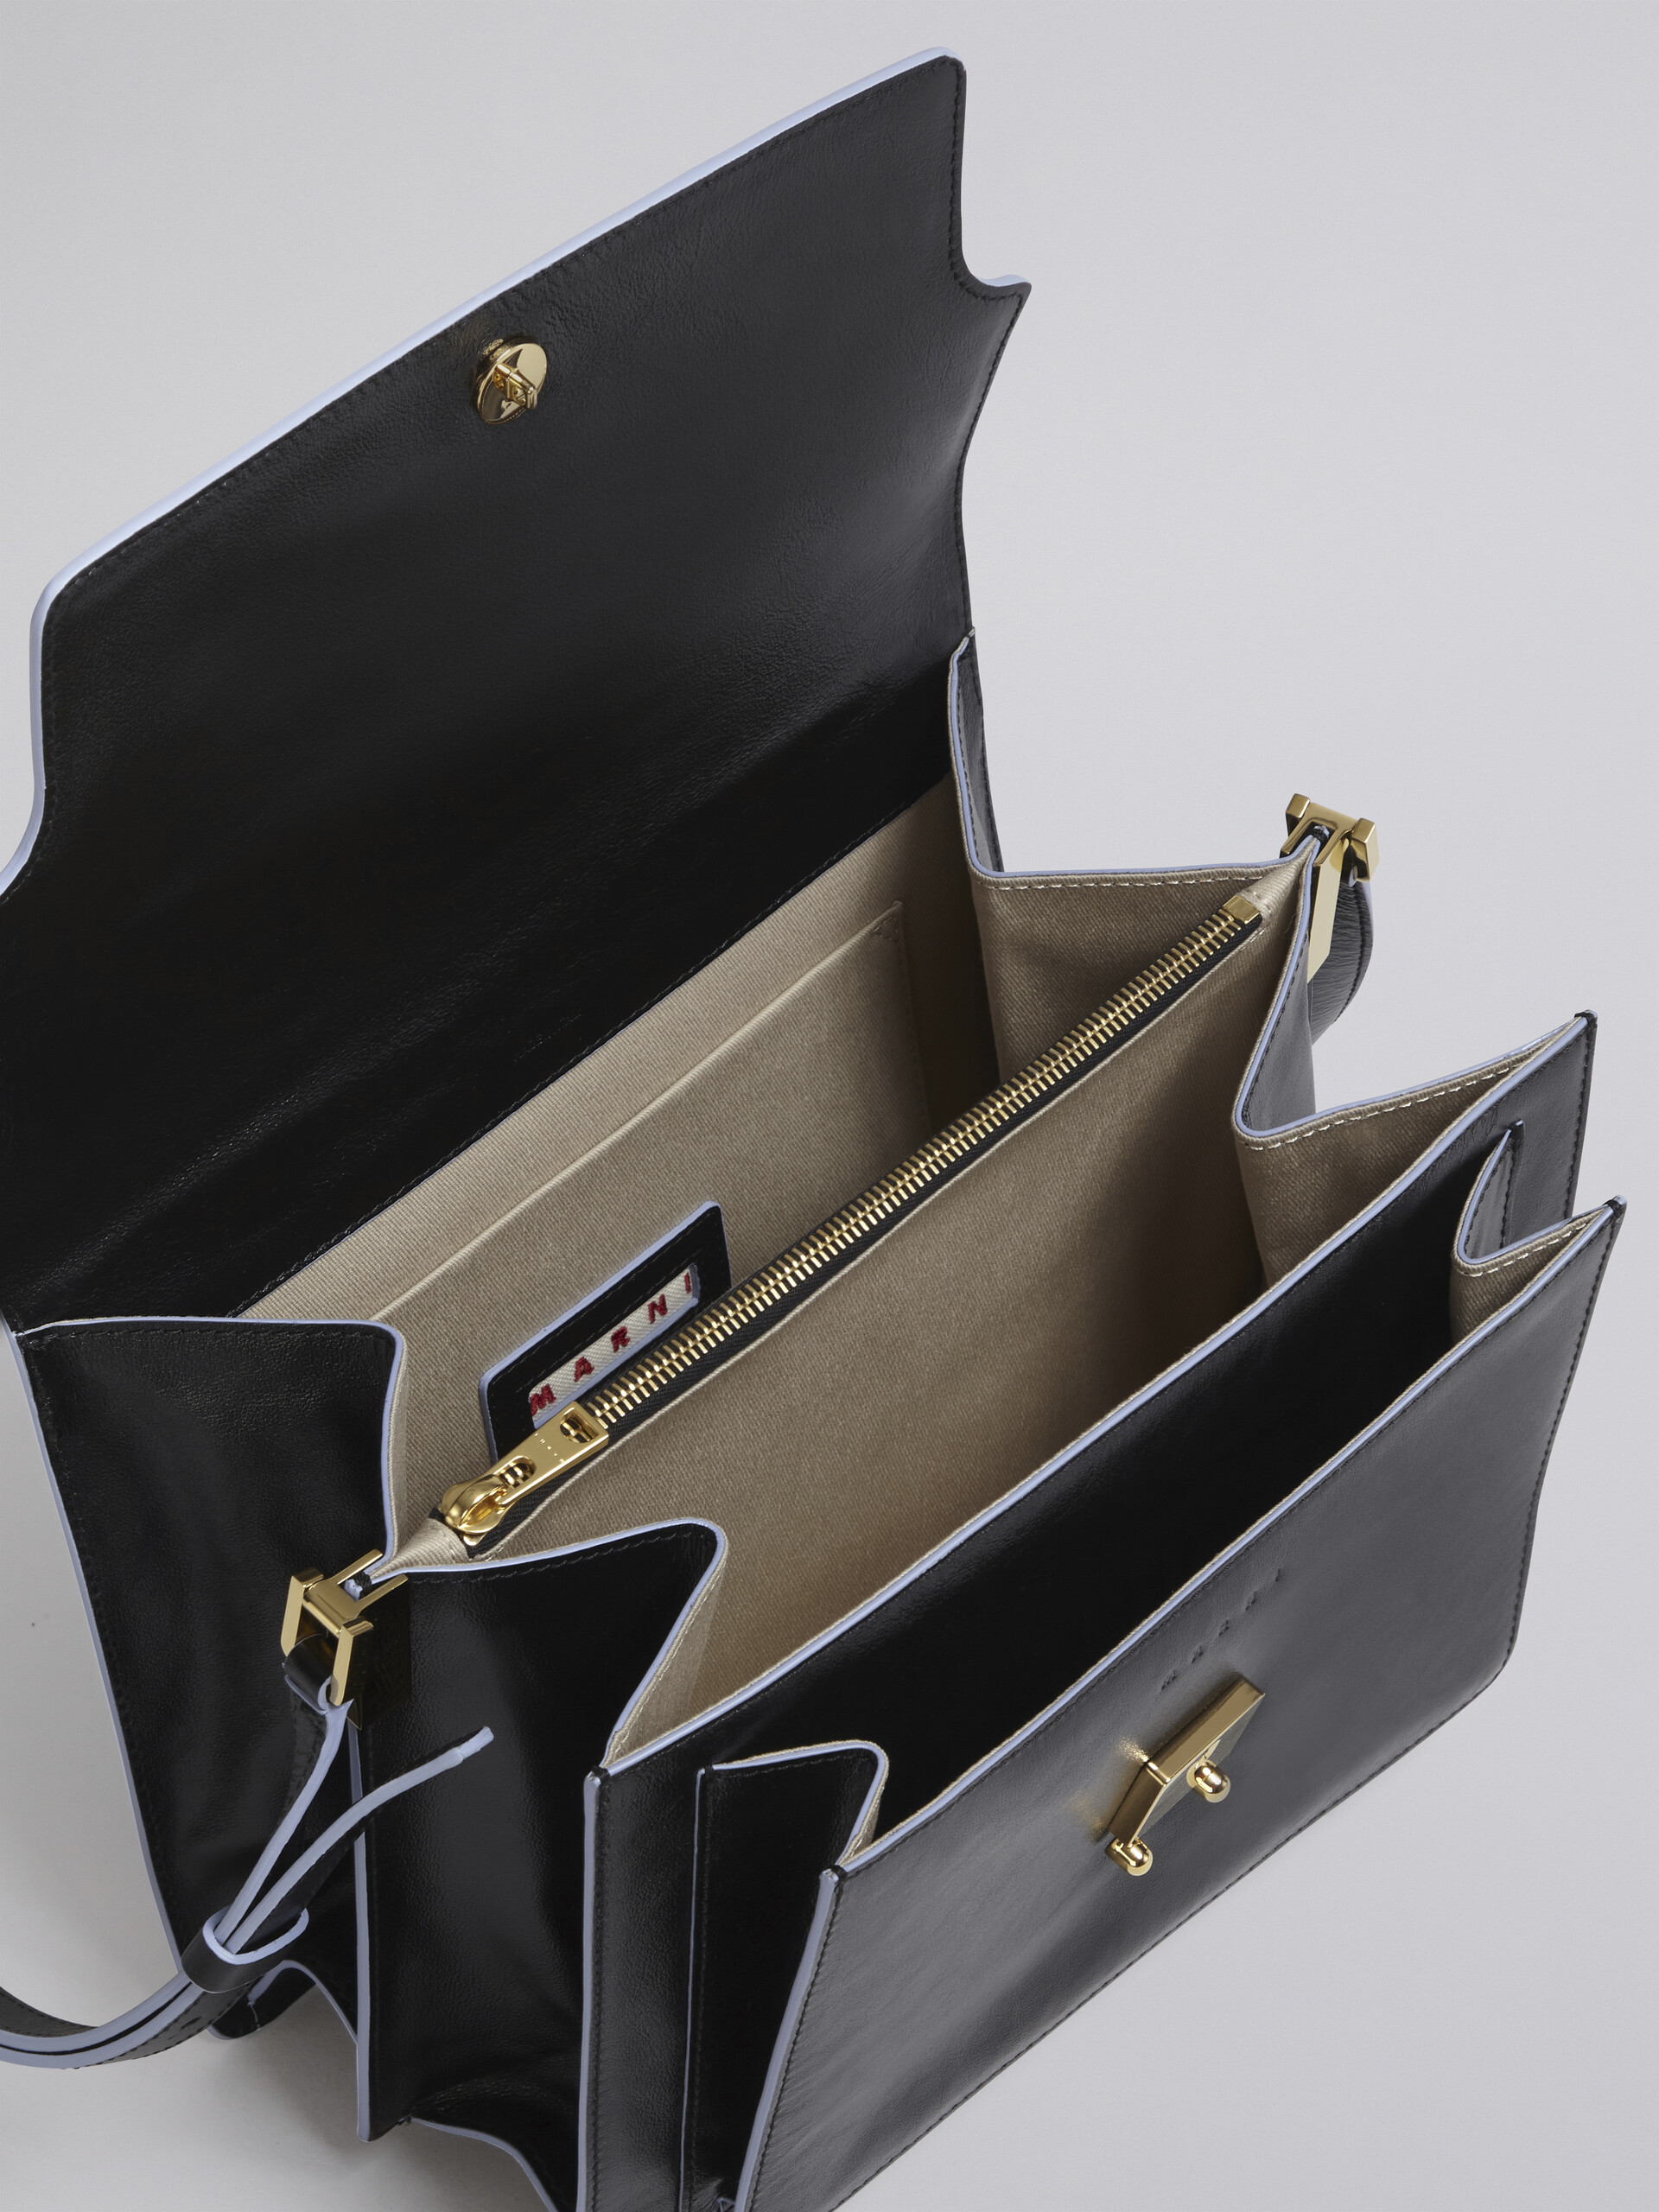 TRUNK SOFT large bag in black leather - Shoulder Bag - Image 3